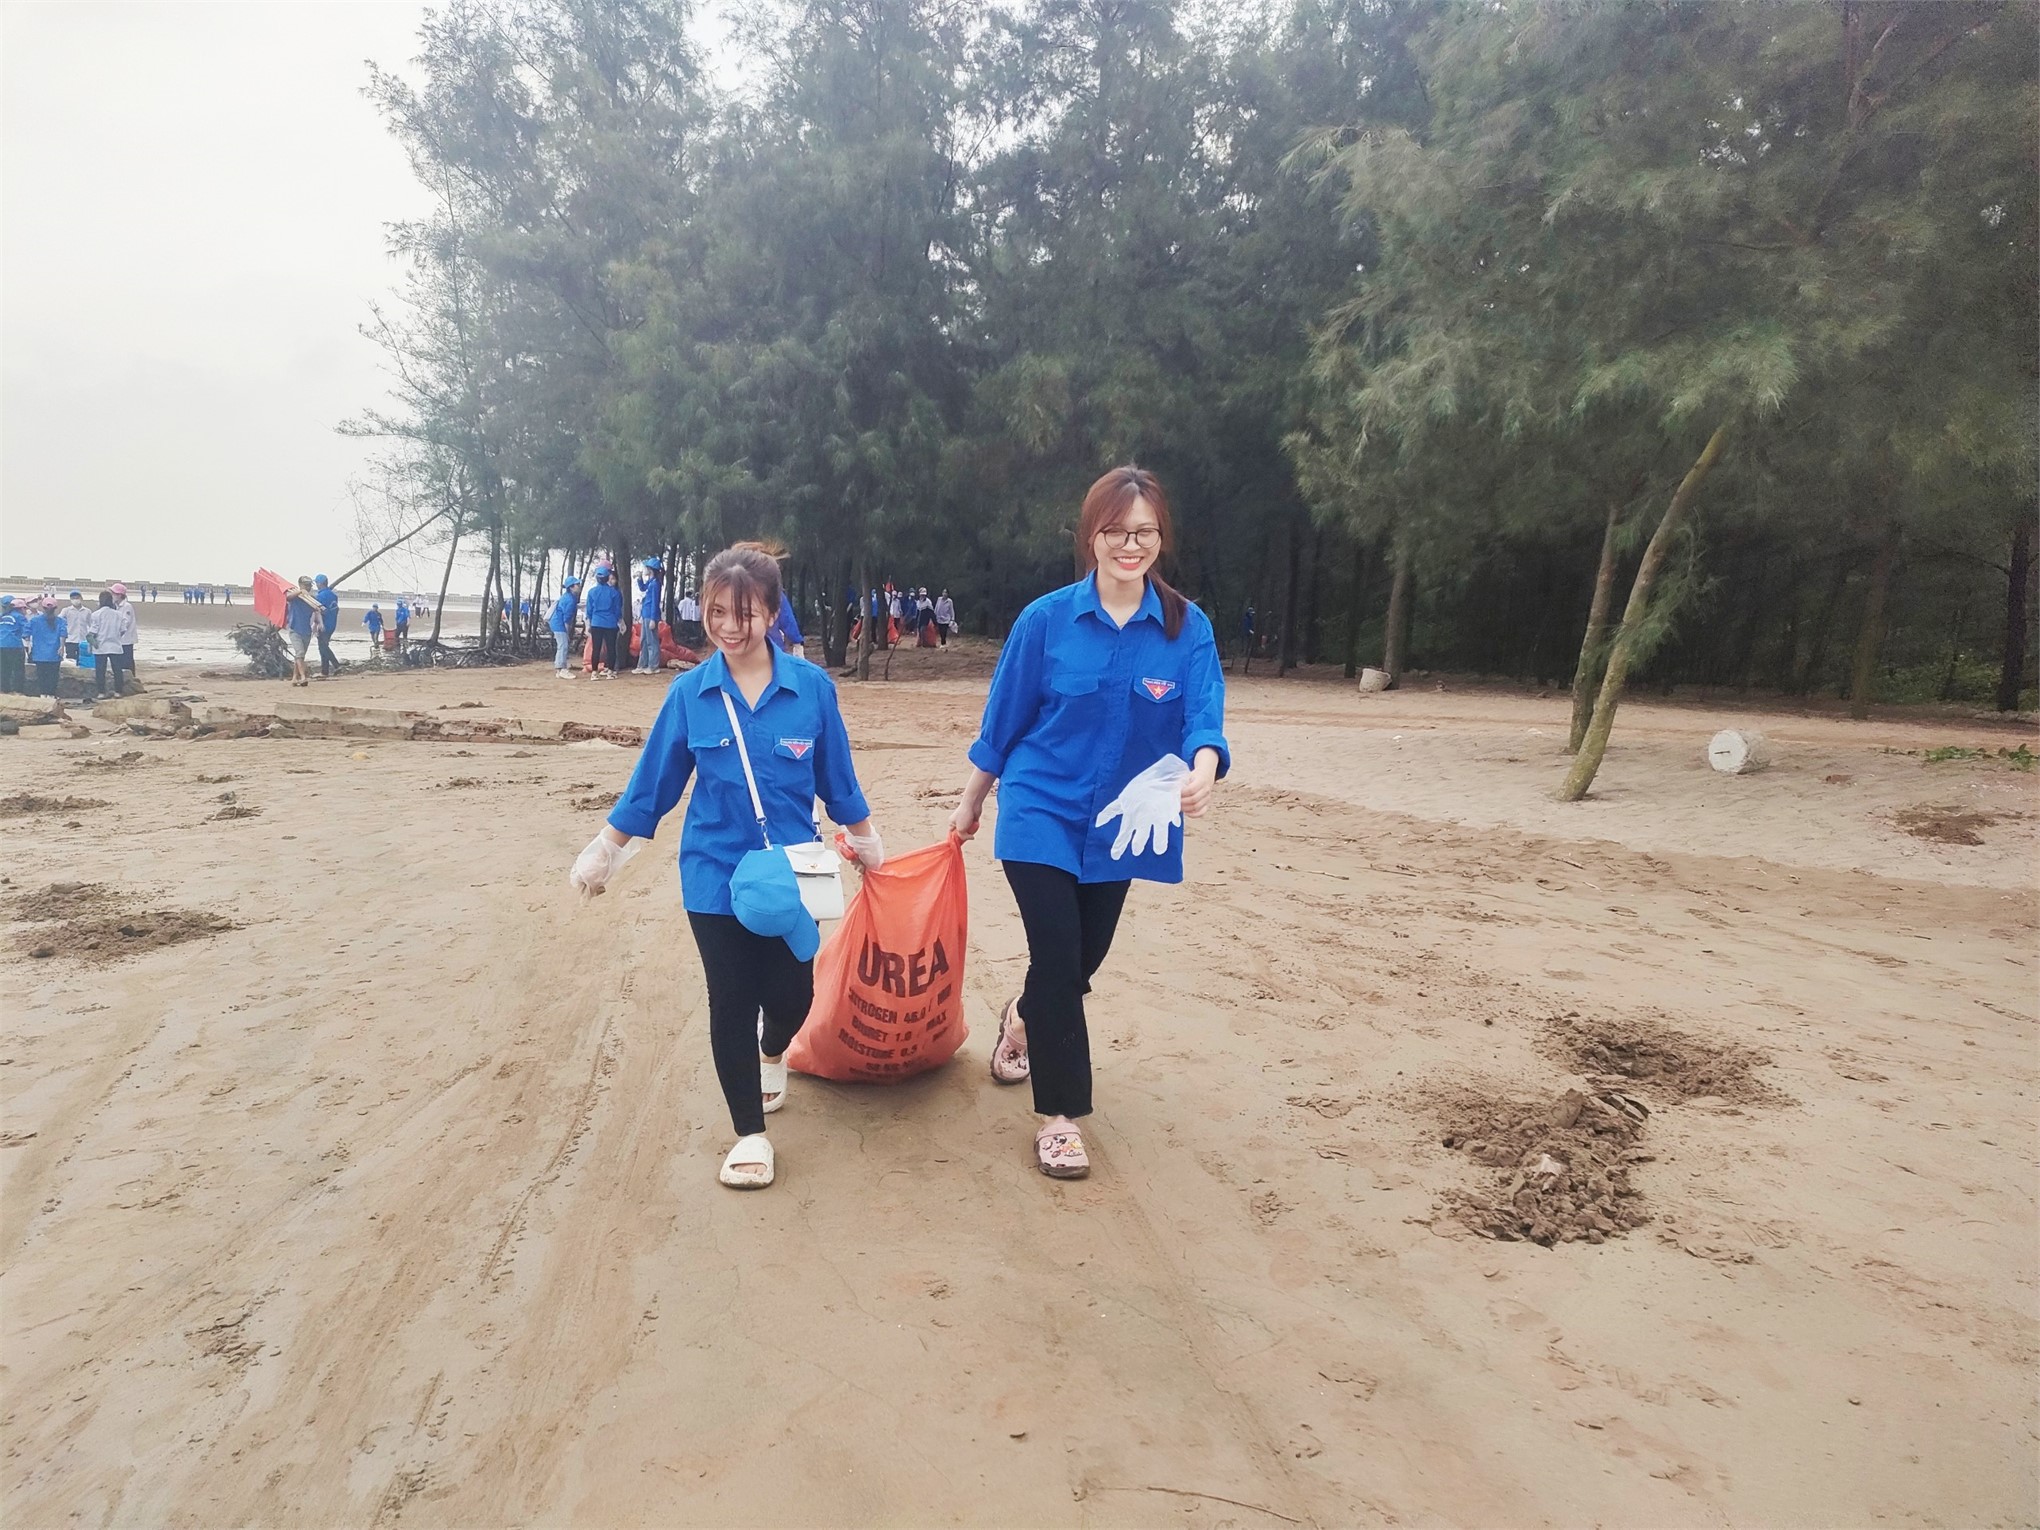 Đoàn viên, hội viên trường Đại học Hoa Lư tham gia Chương trình làm sạch biển tại xã Cồn Nổi, Huyện Kim Sơn